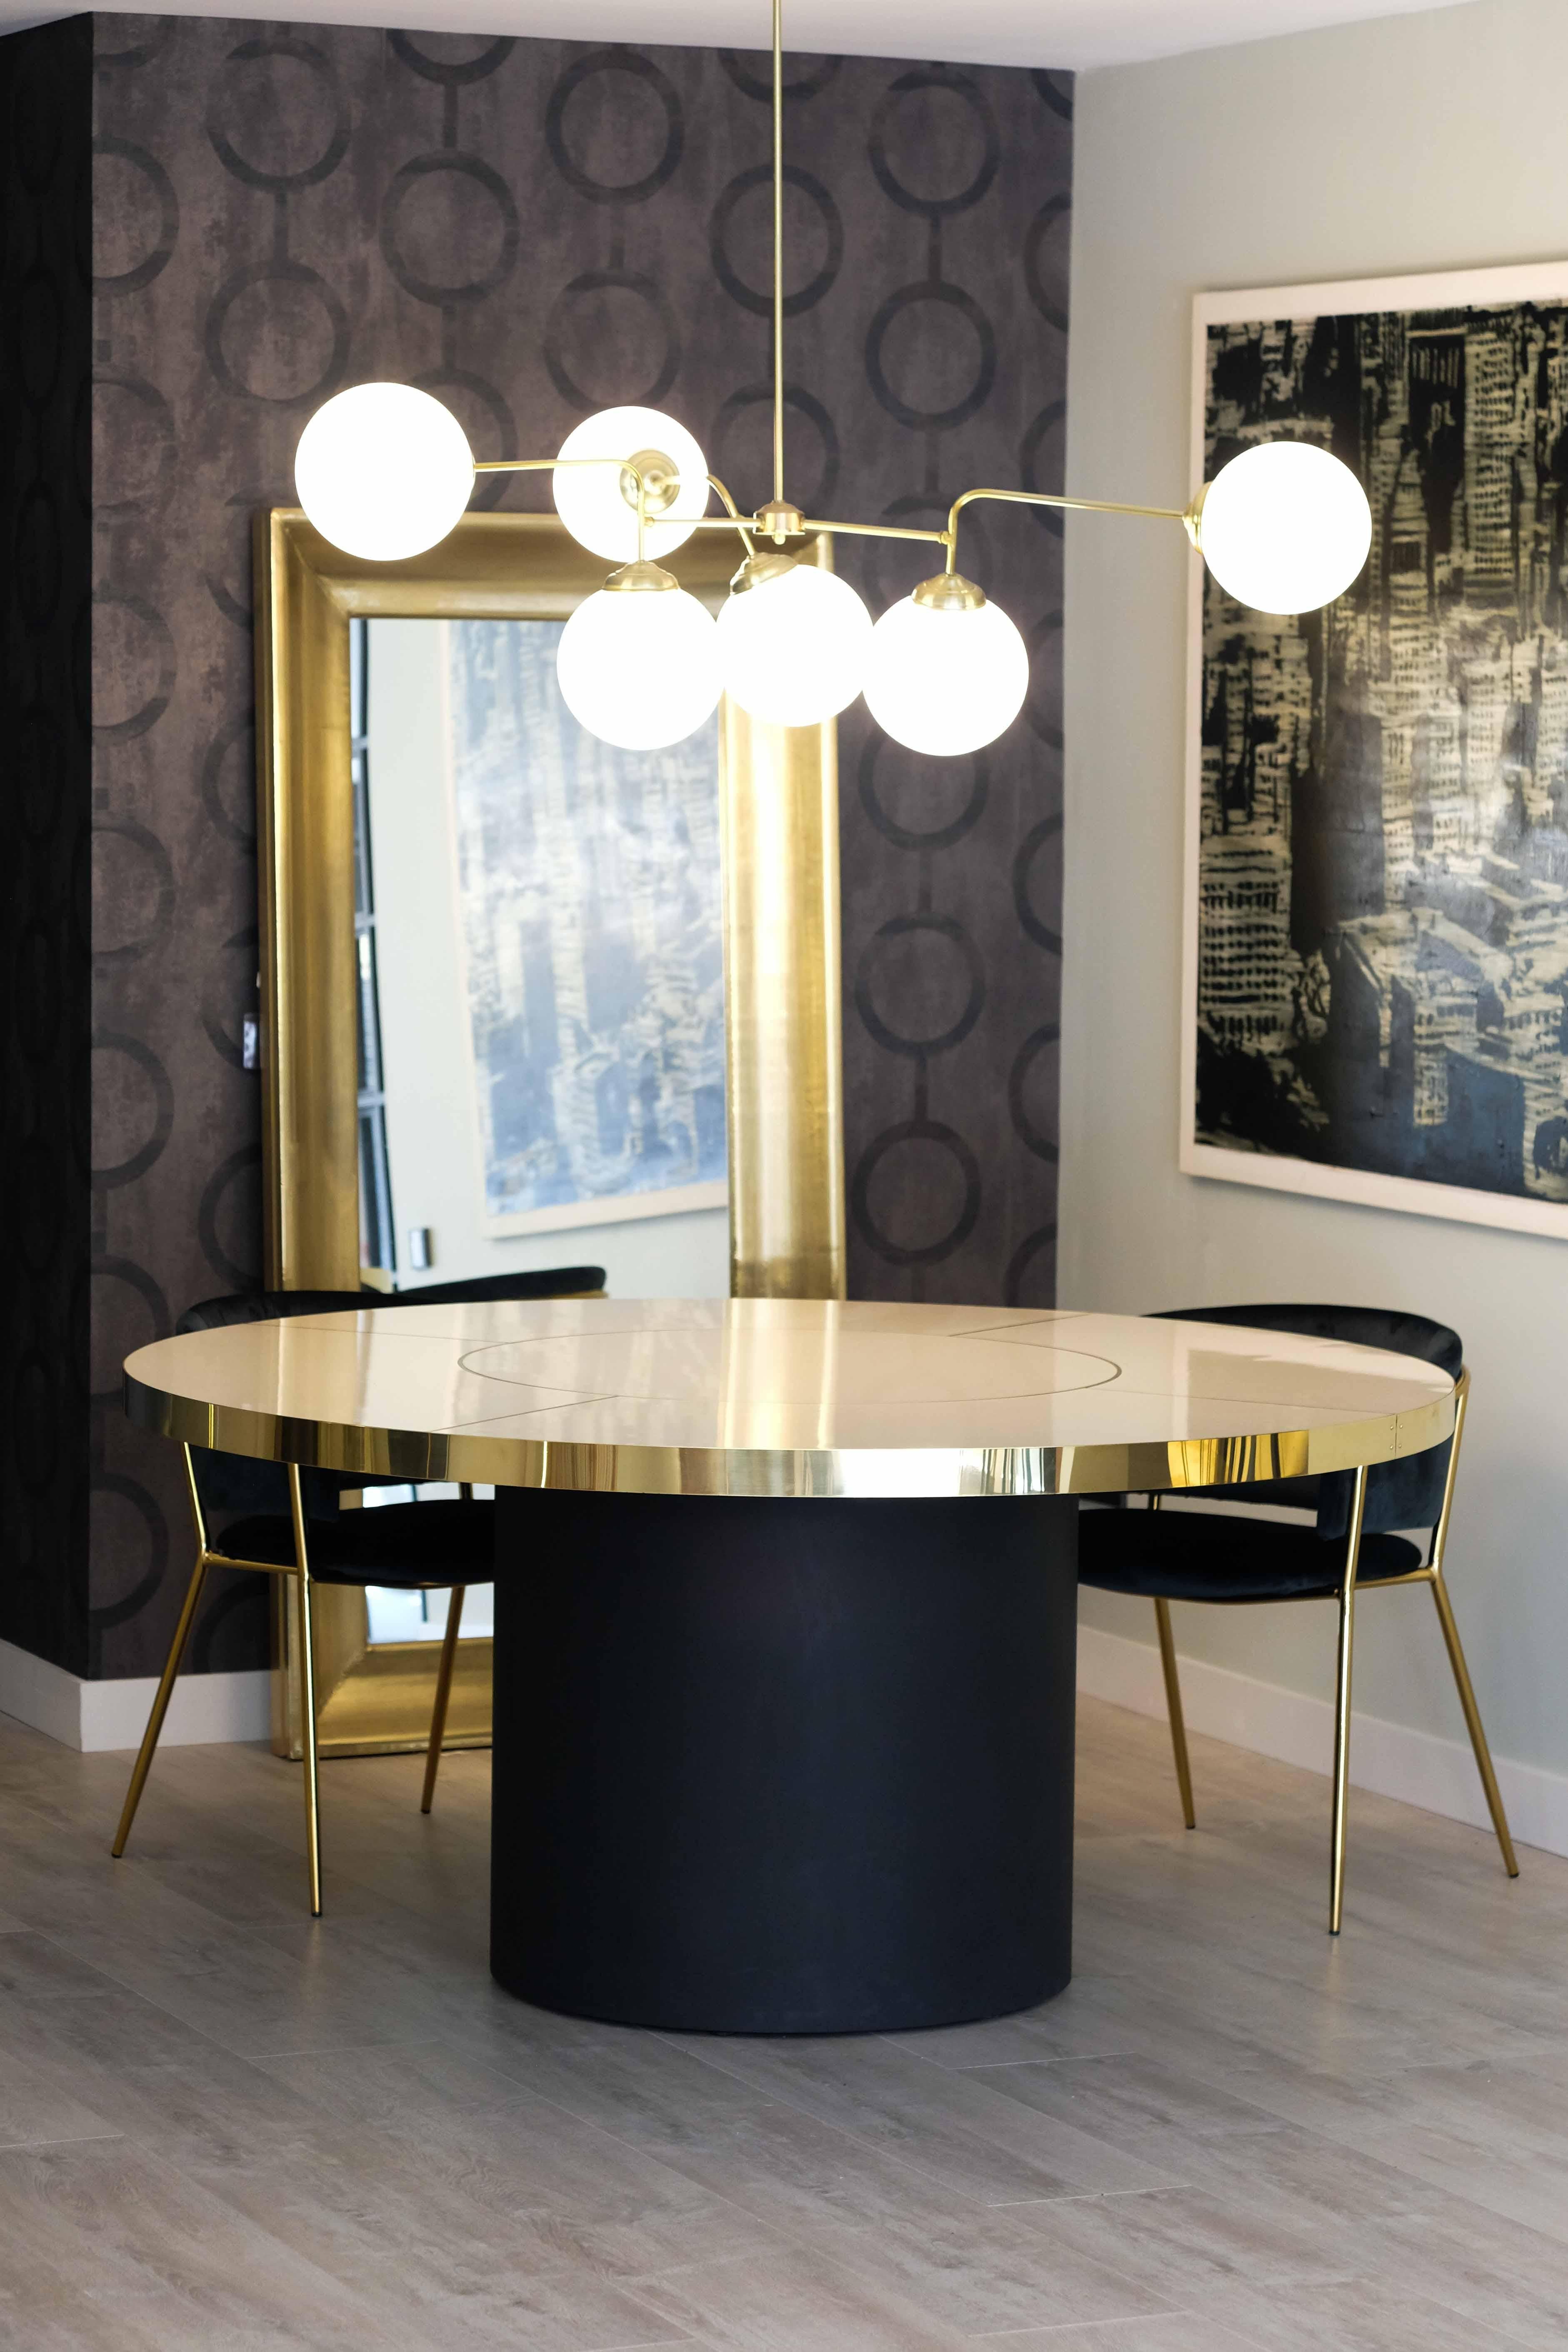 Table de salle à manger ronde au design rétro Style Palm Springs Stratifié brillant et détails en laiton Taille moyenne

Découvrez notre incroyable collection de tables design de style rétro inspirées de la décoration emblématique des années 1950,